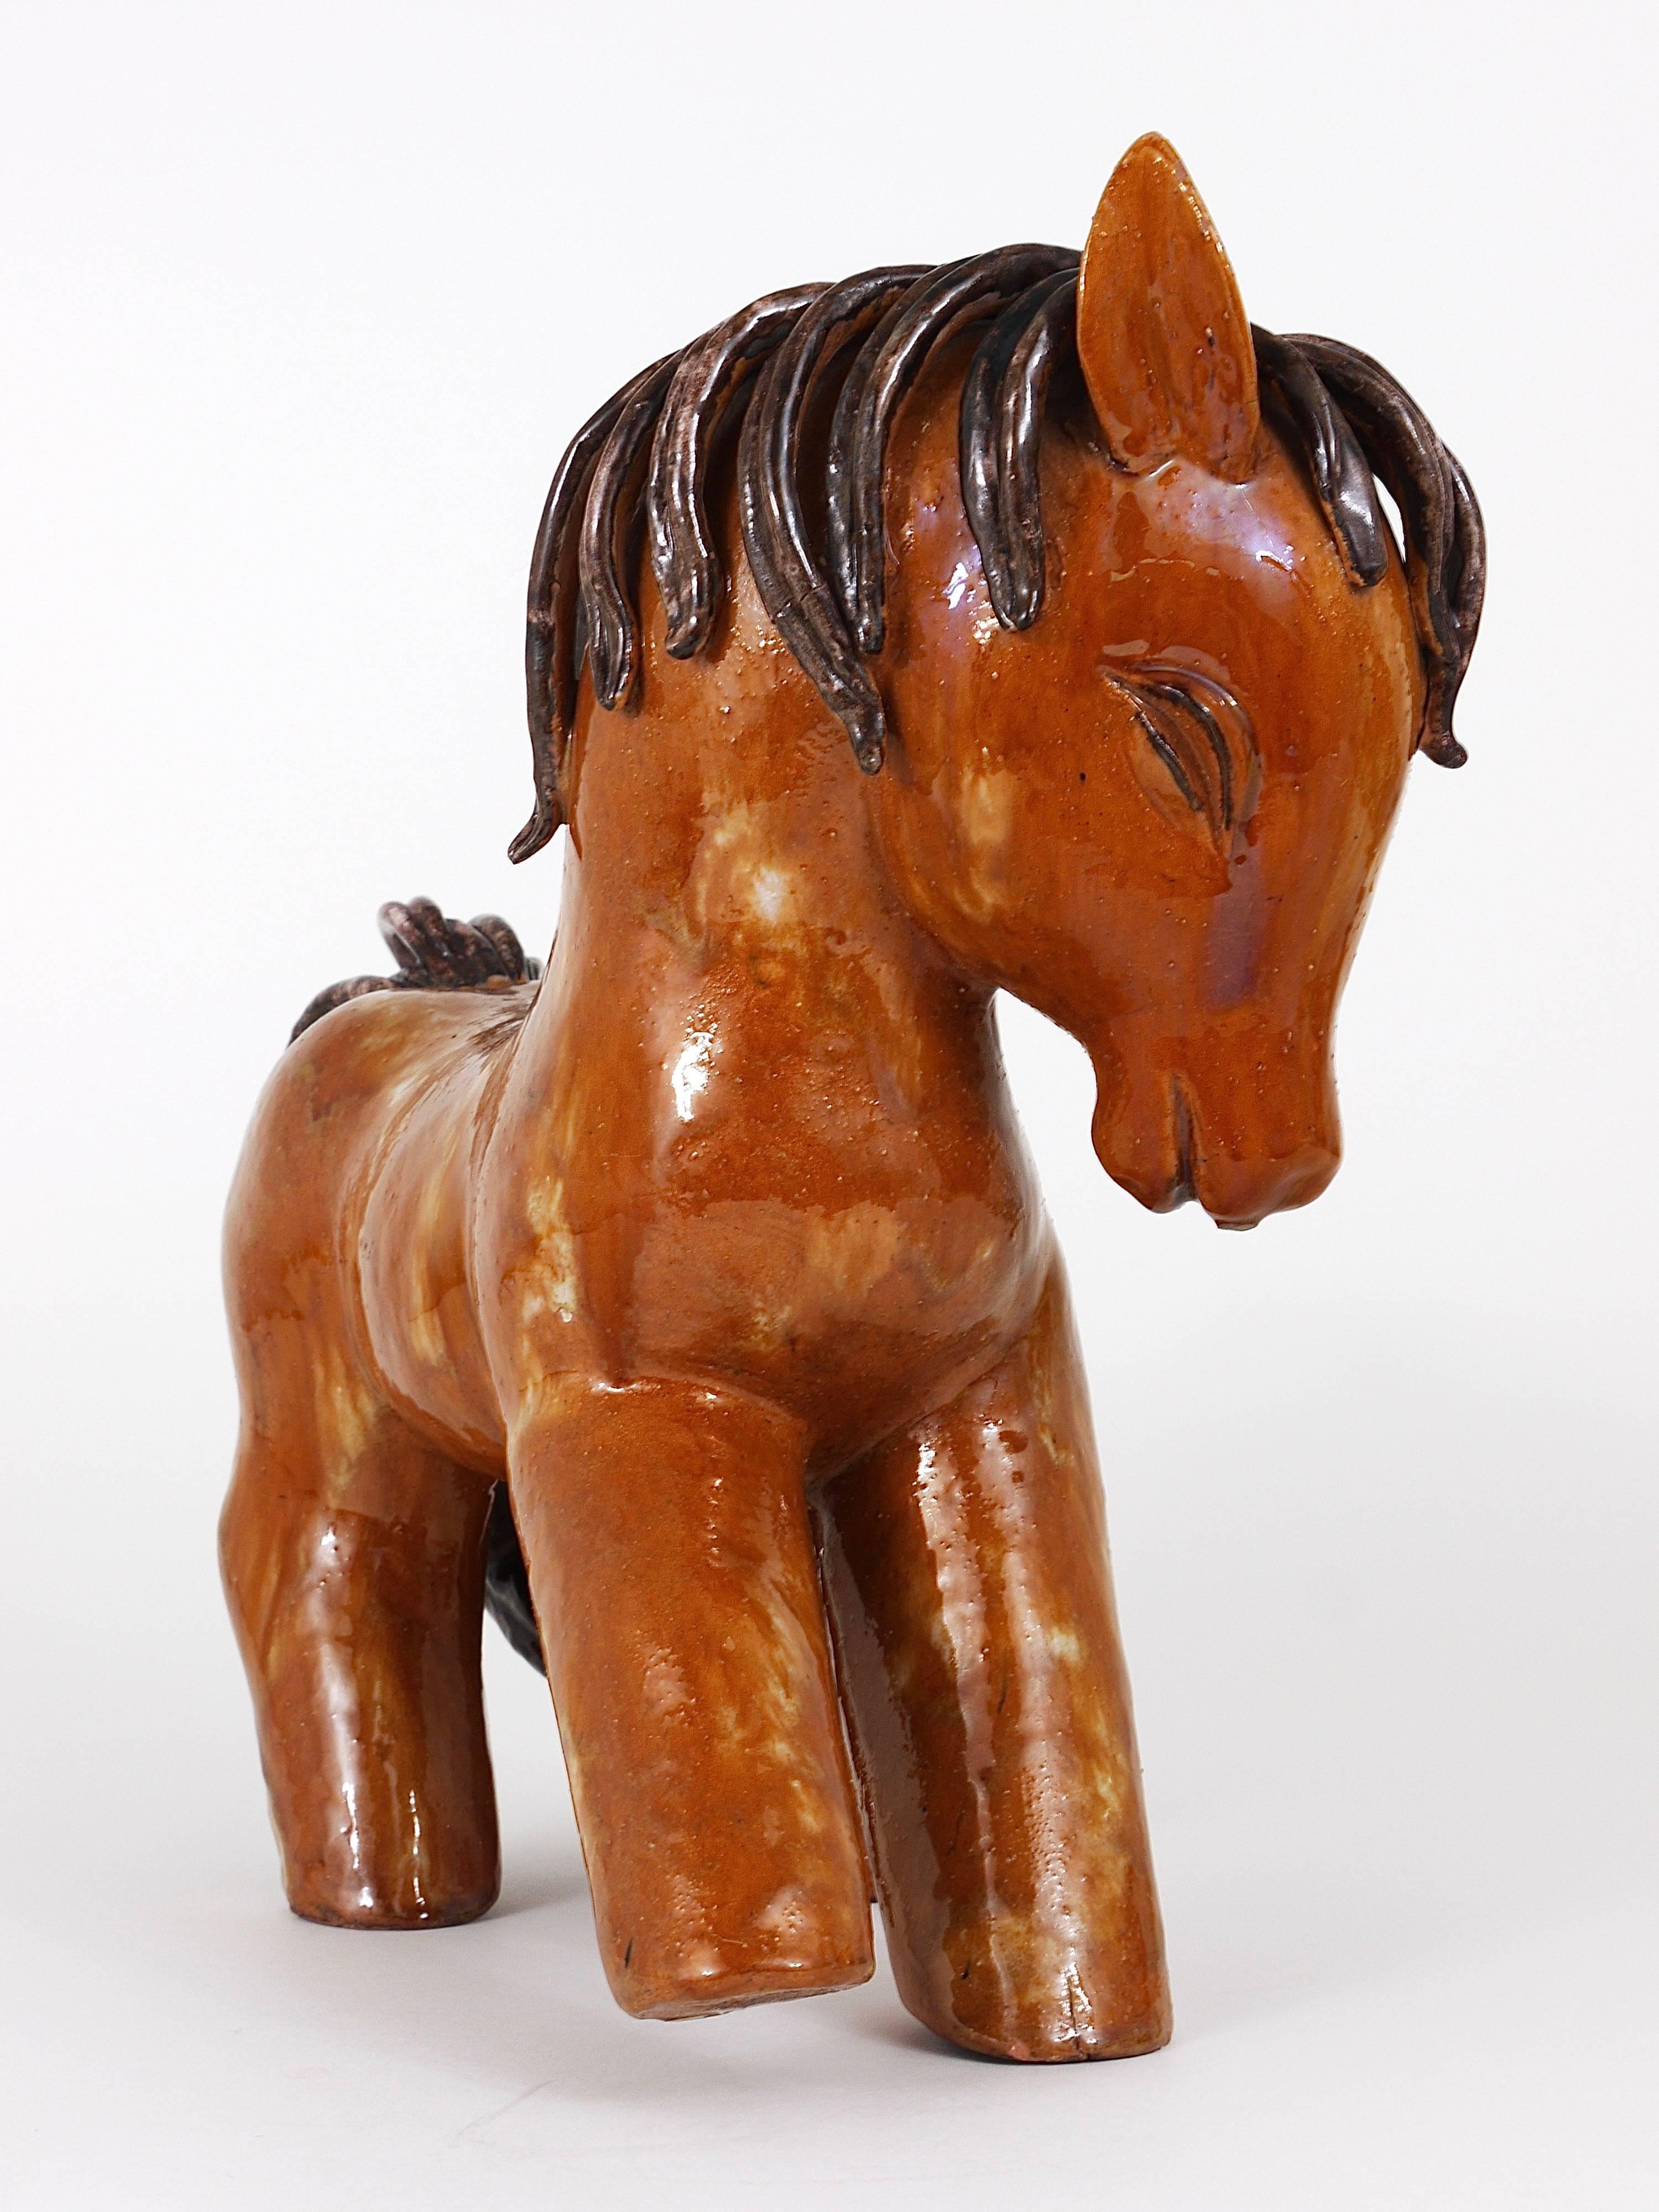 Eine schöne und große handgefertigte Figur / Statue, die ein Pferd aus den Jahren 1947 bis 1951 darstellt. Entworfen von Walter Bosse, hergestellt aus Keramik/Terrakotta in Kufstein/Tirol, Österreich. Ein charmantes Stück in sehr gutem Zustand. Eine